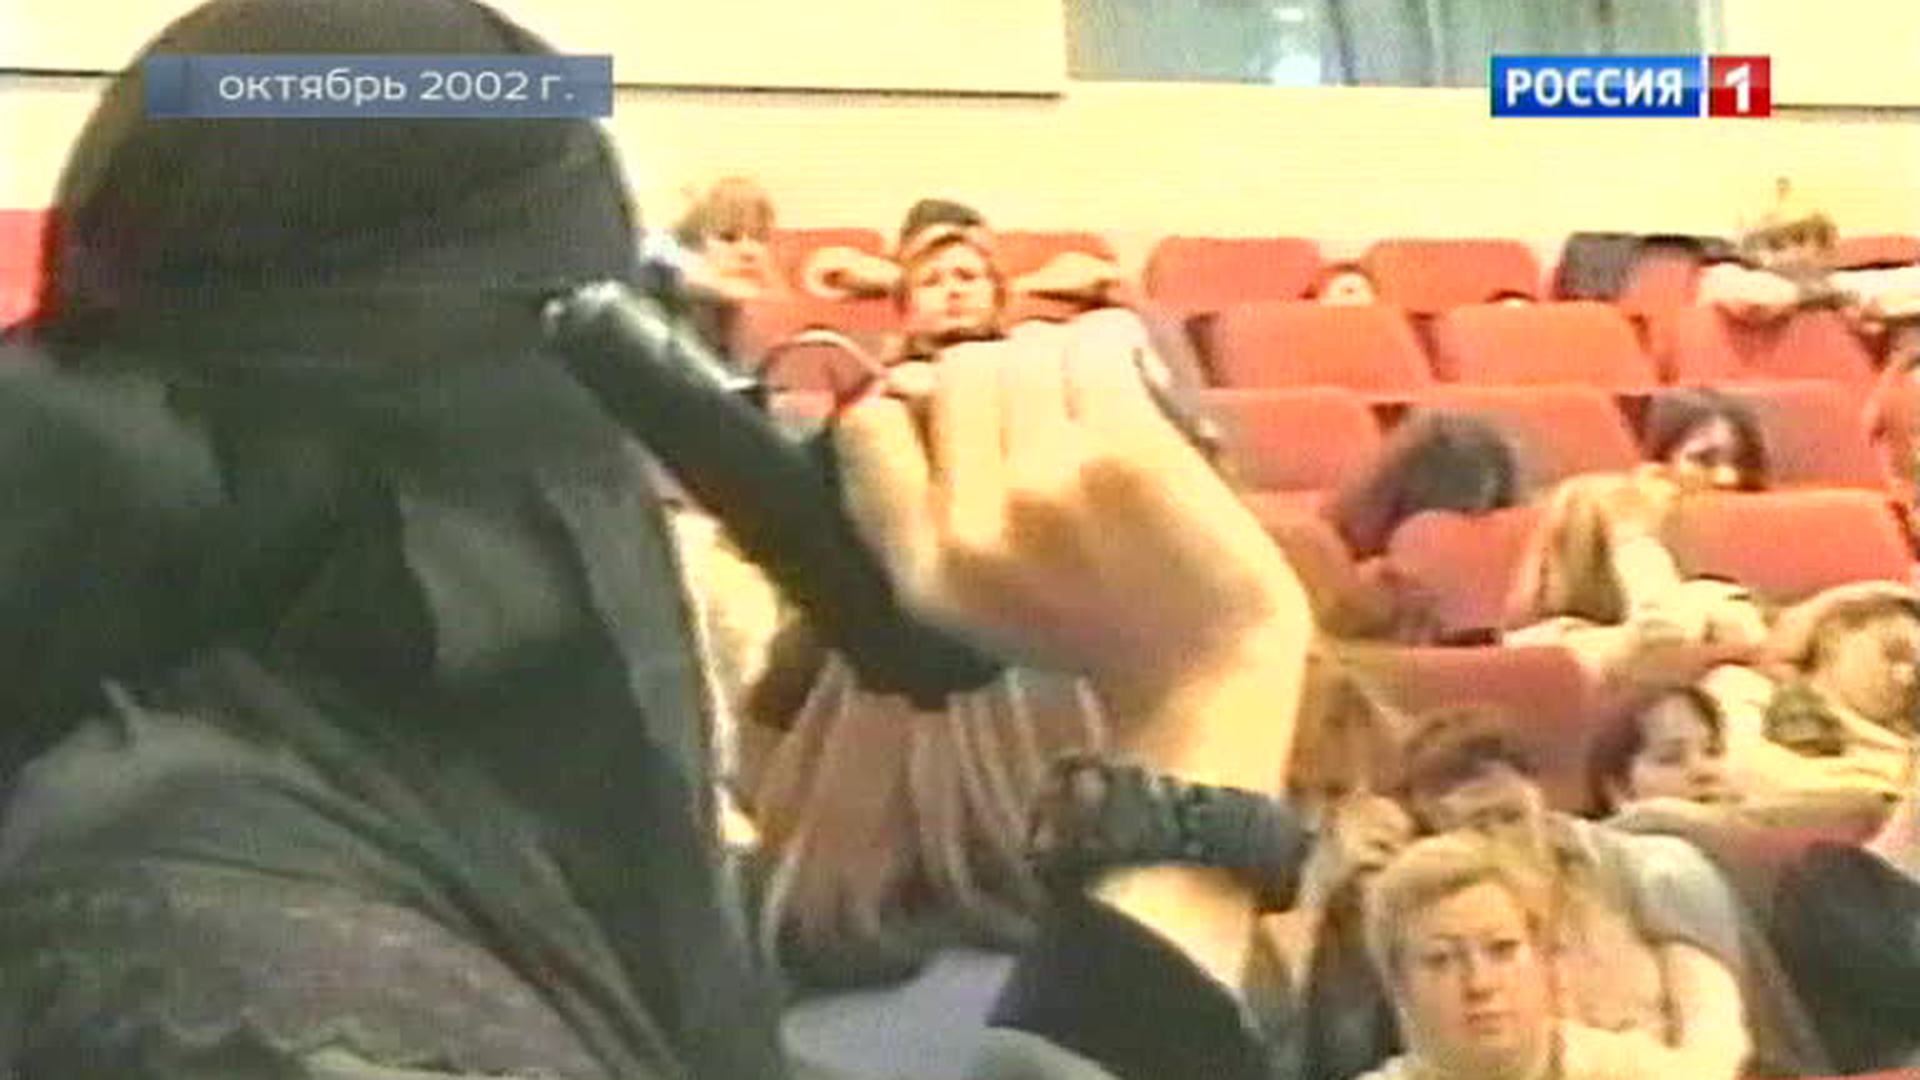 Захват театра на дубровке. 23 Октября 2002 года в театральный центр на Дубровке в Москве. Теракта на Дубровке в Москве (2002).